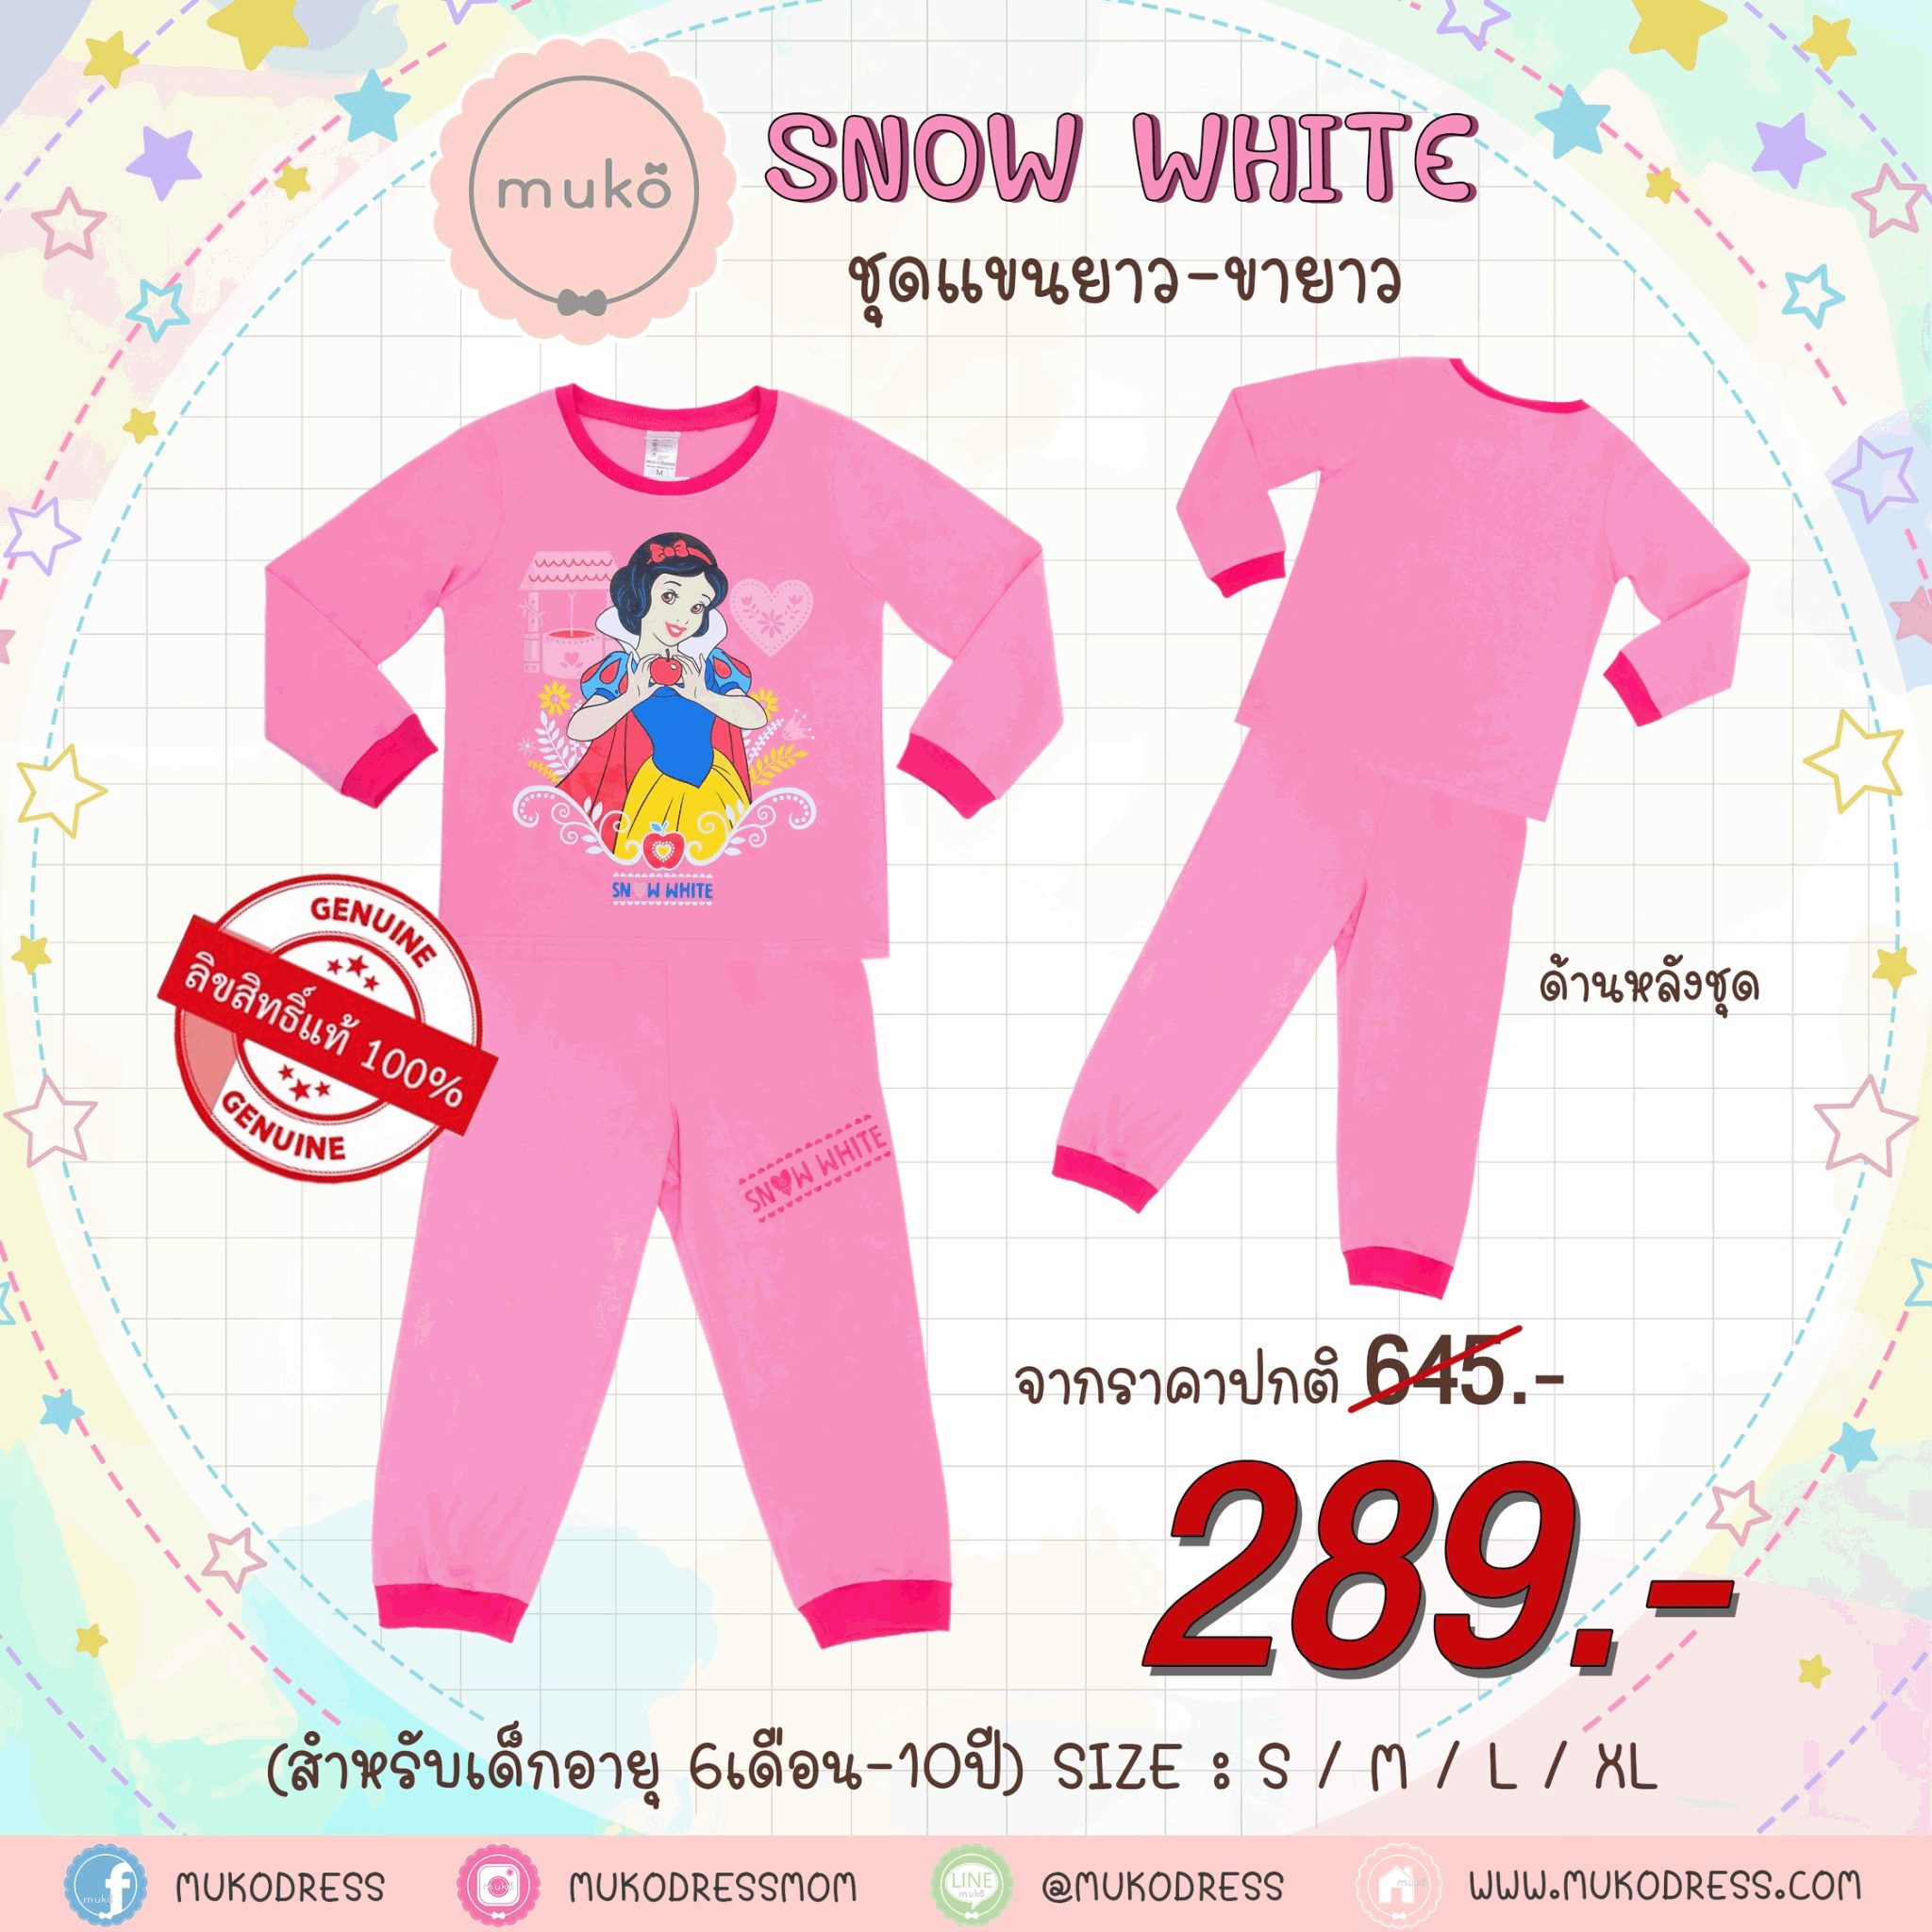 ชุดเด็ก 5-6 ขวบ แขนยาว-ขายาว (Size M) DPC127-09-XL-Pink M ลายเจ้าหญิงสโนไวท์ Snow white สีชมพู (ชมพูทั้งชุดขอบบานเย็น)